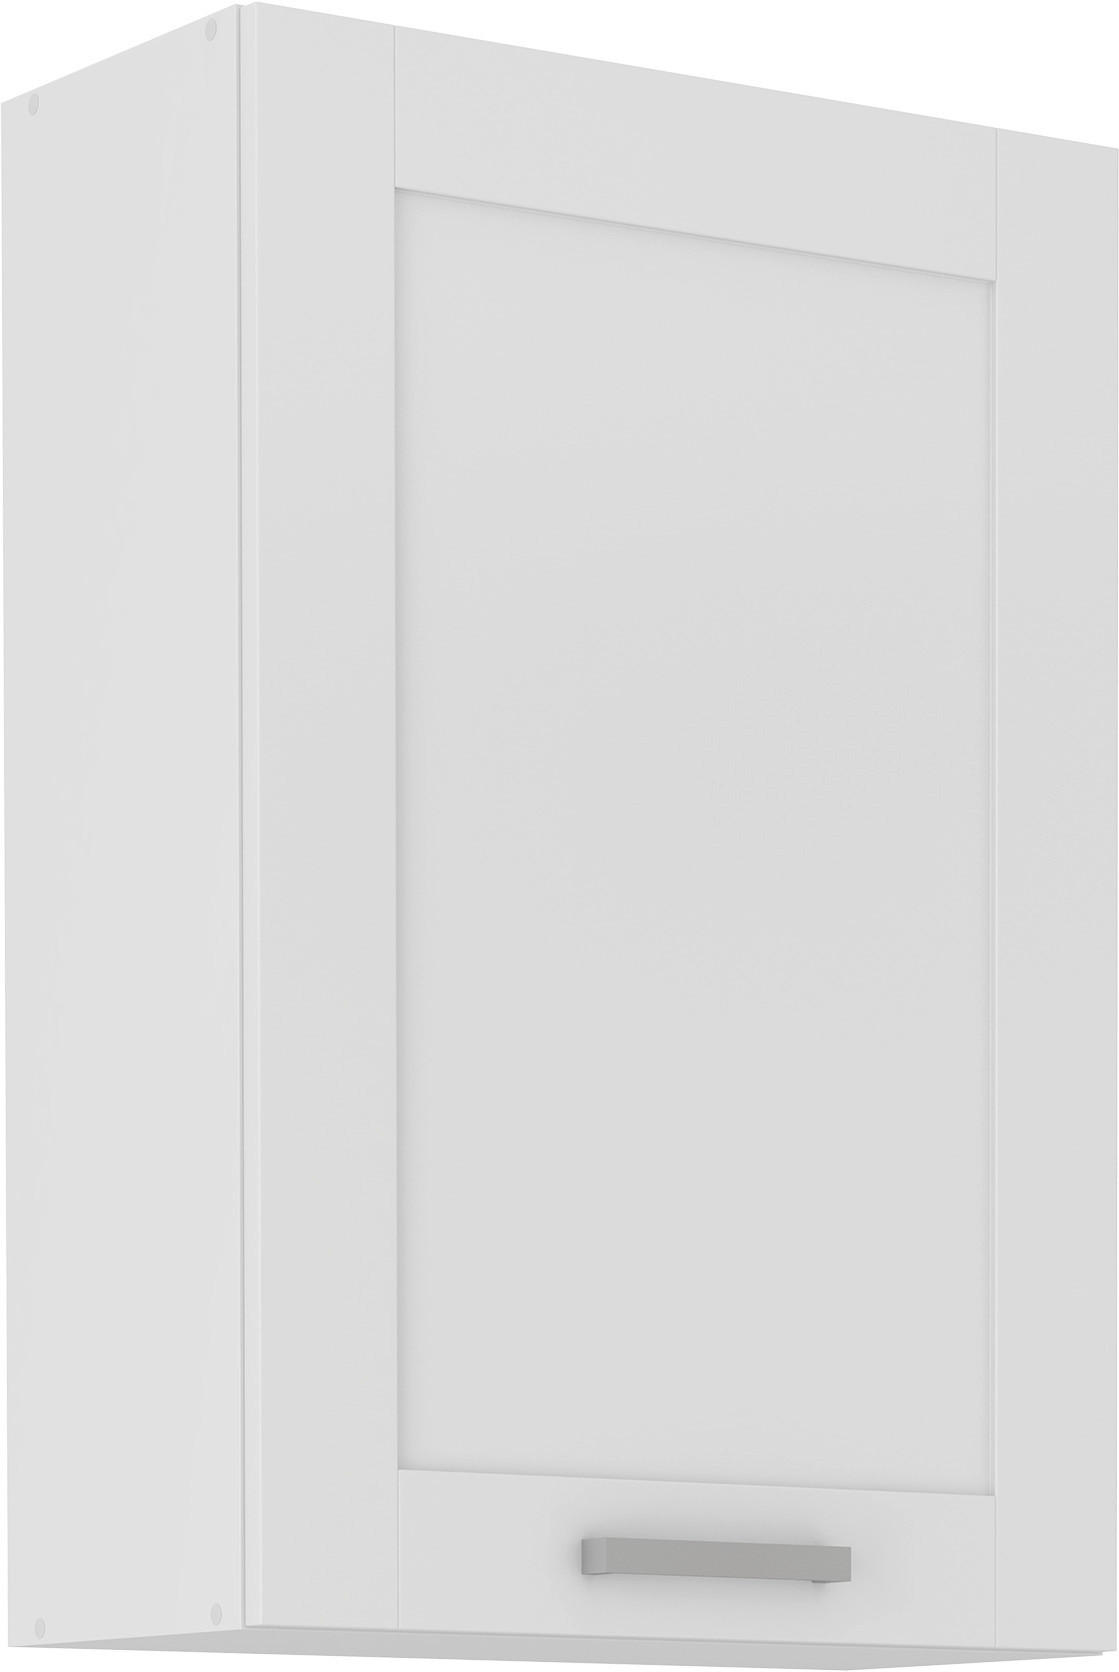 KÜCHENOBERSCHRANK 60/90/31 cm  in Weiß  - Silberfarben/Weiß, ROMANTIK / LANDHAUS, Holzwerkstoff/Metall (60/90/31cm) - Ondega